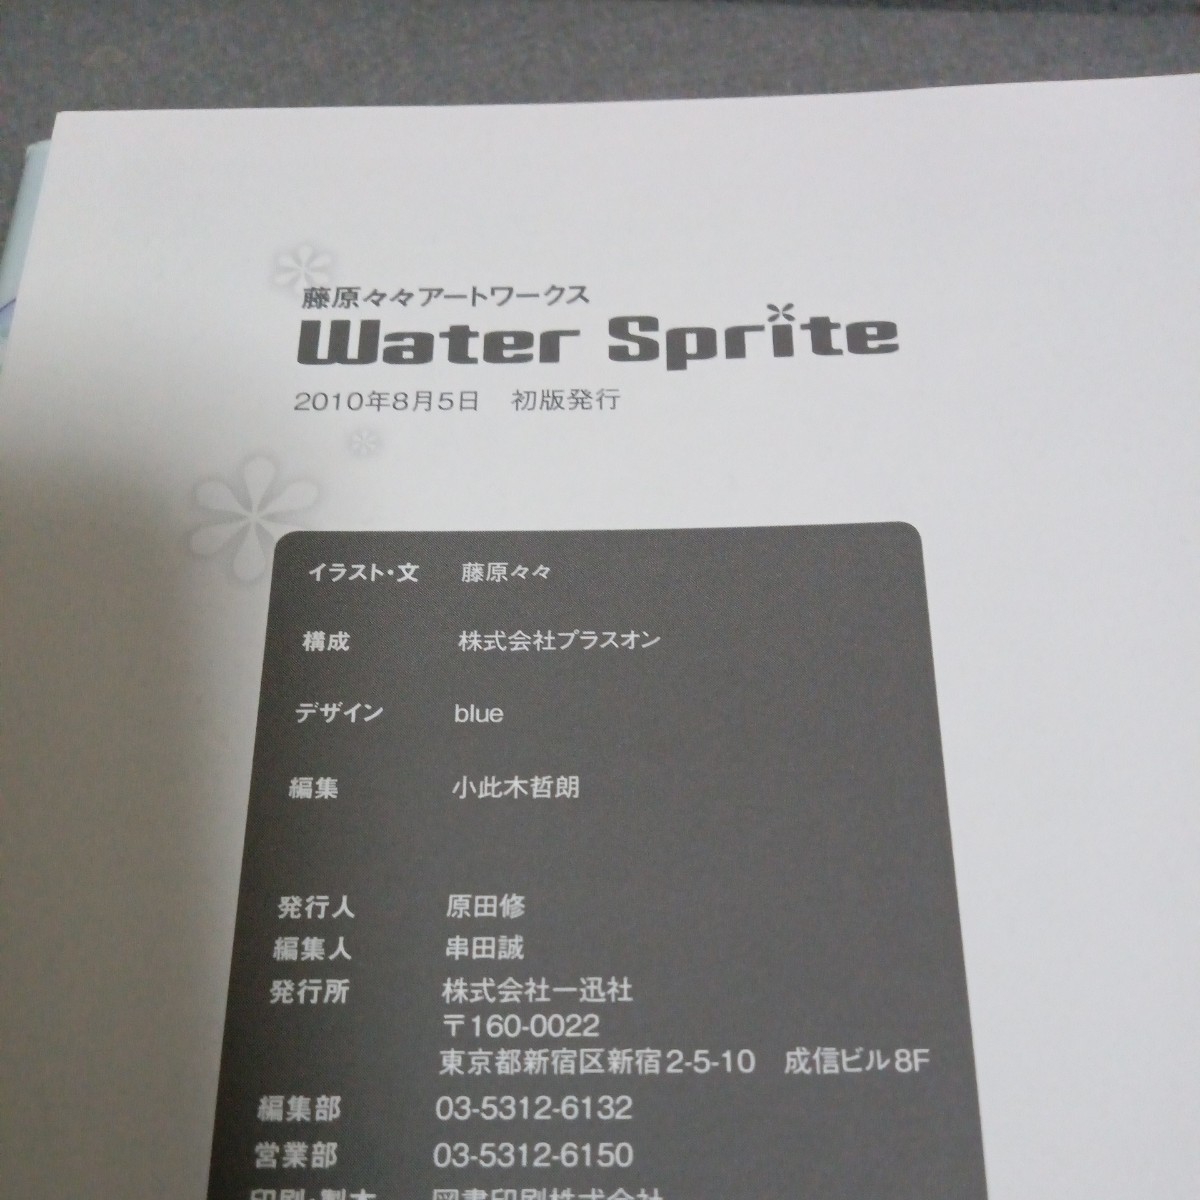 藤原々々 アートワークス Water Sprite 2003 - 2010 一迅社 帯裂け 初版の画像4